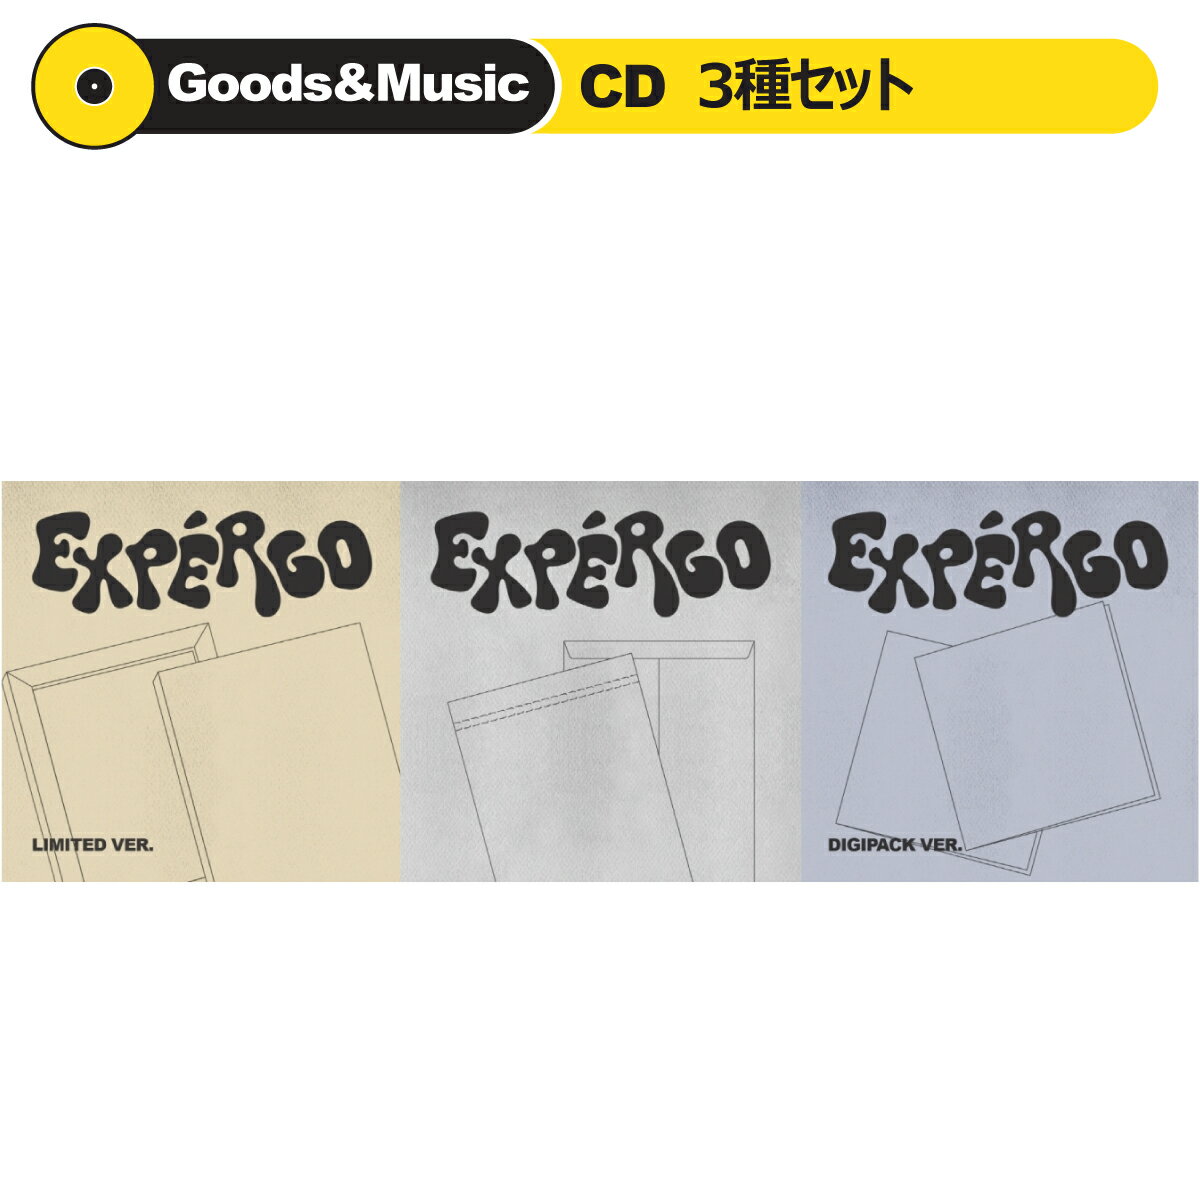 楽天Goods ＆ Music【3種セット】【和訳選択】NMIXX EXPERGO 1ST EP ALBUM エンミックス【弊店限定特典】【安心国内発送】